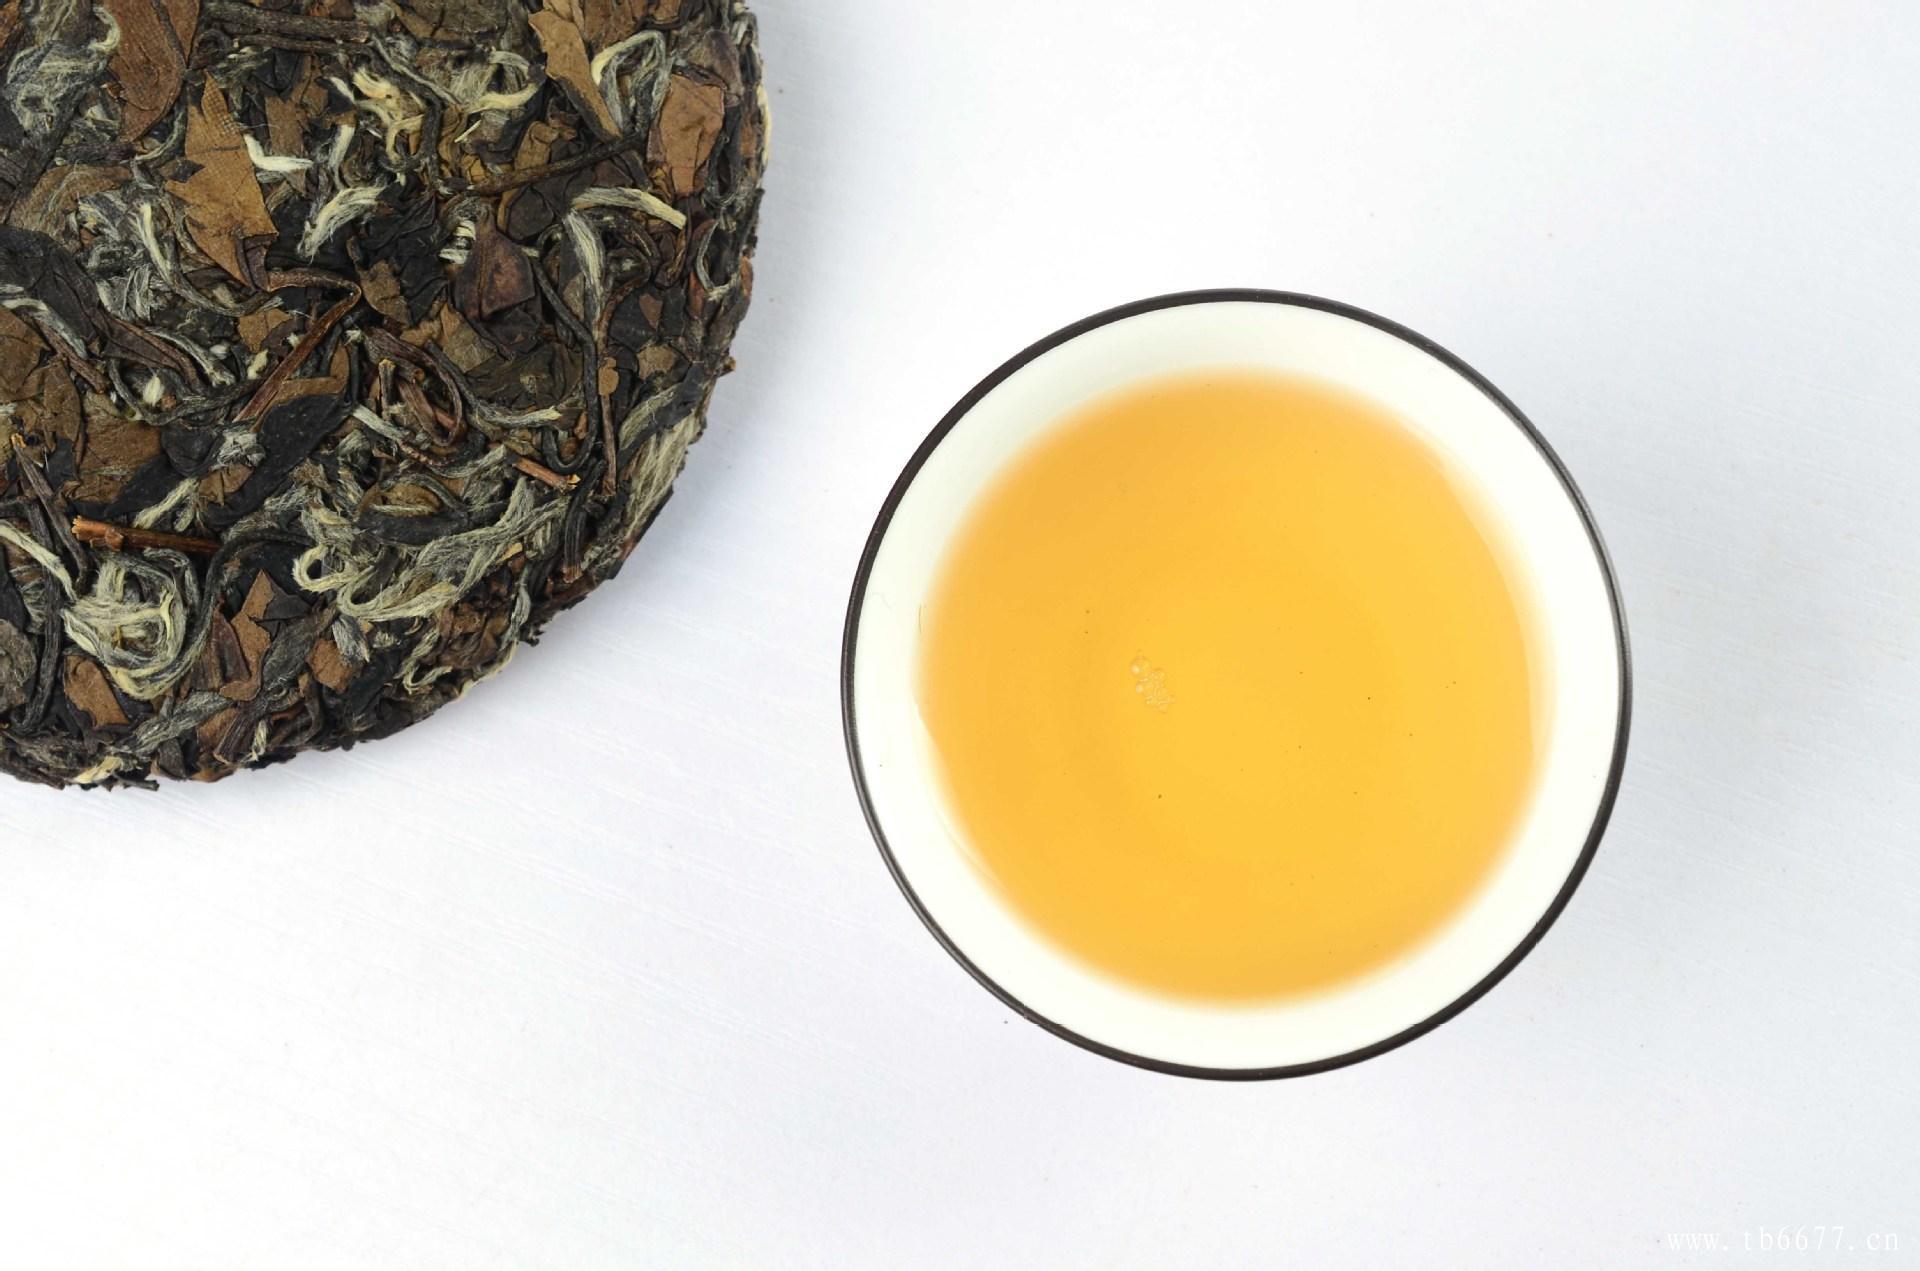 福鼎老白茶的保存价值